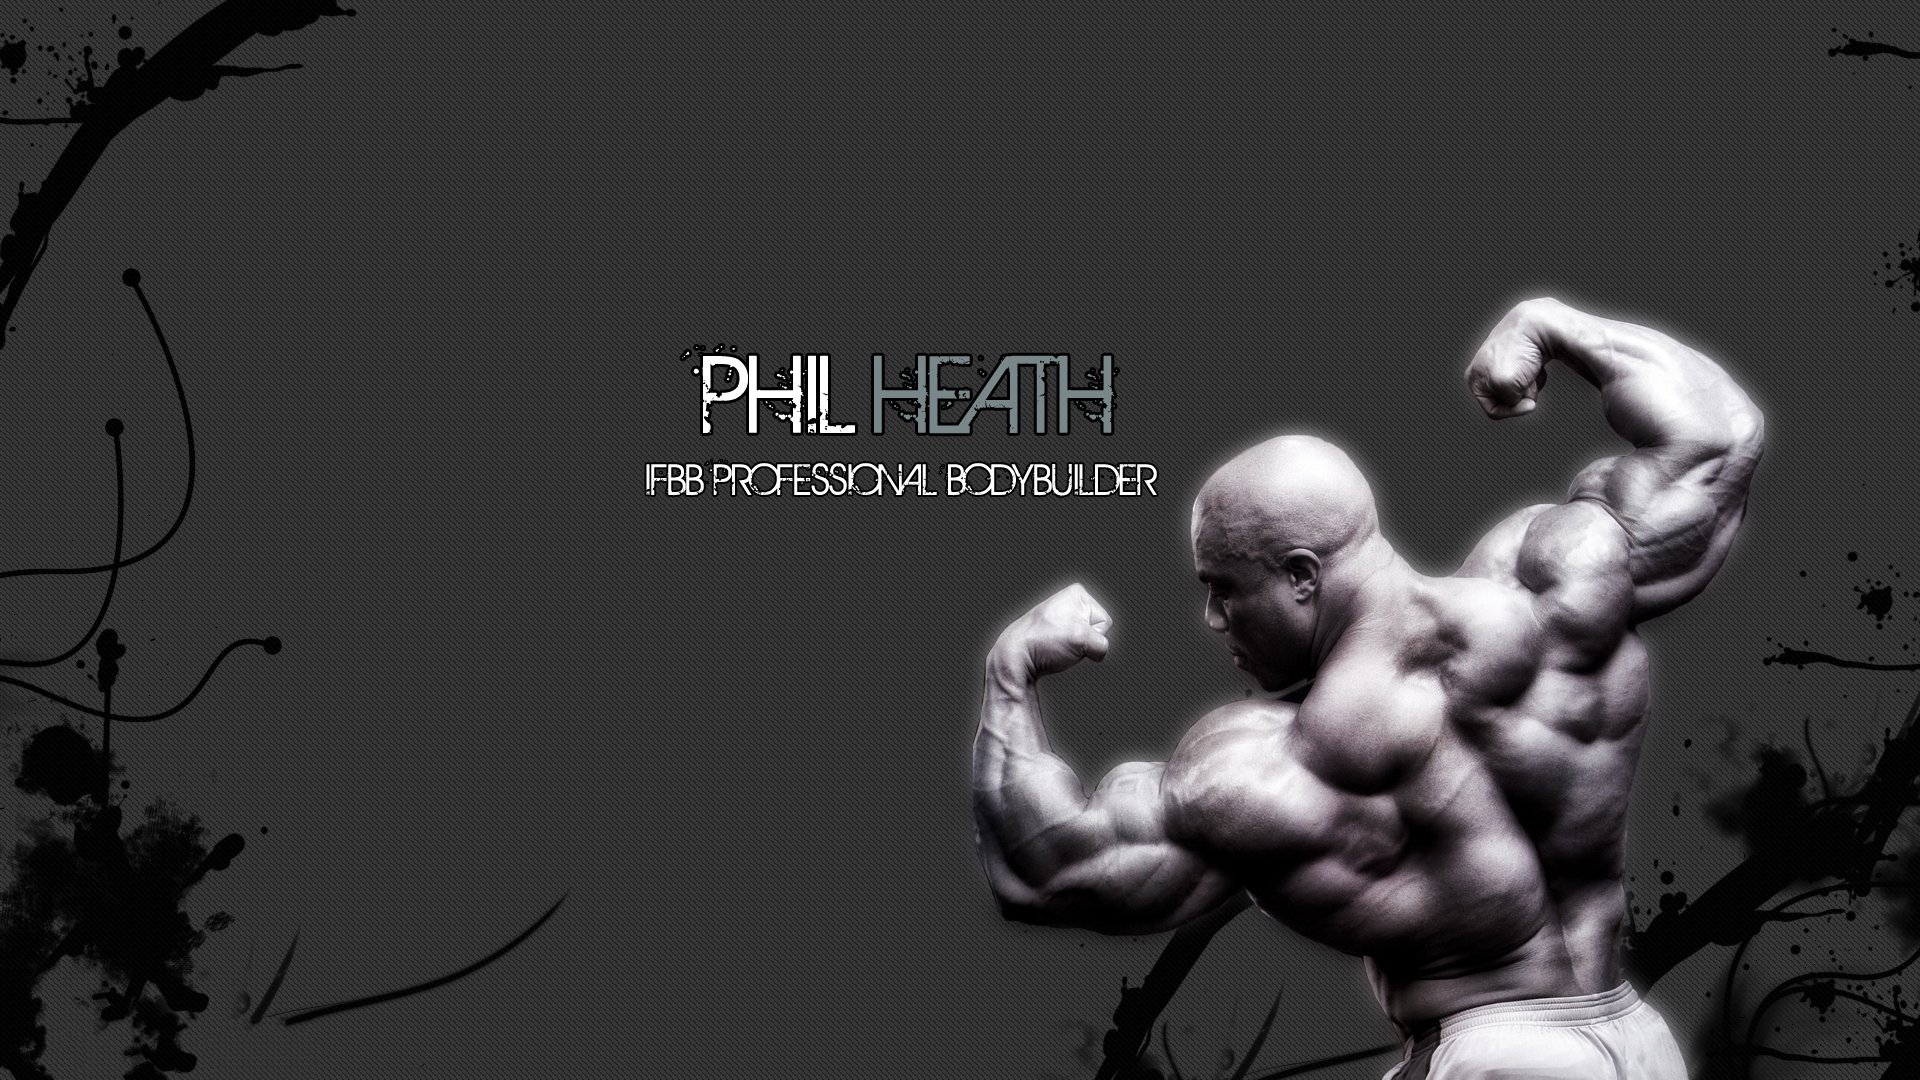 bodybuilding backgrounds pixelstalknet